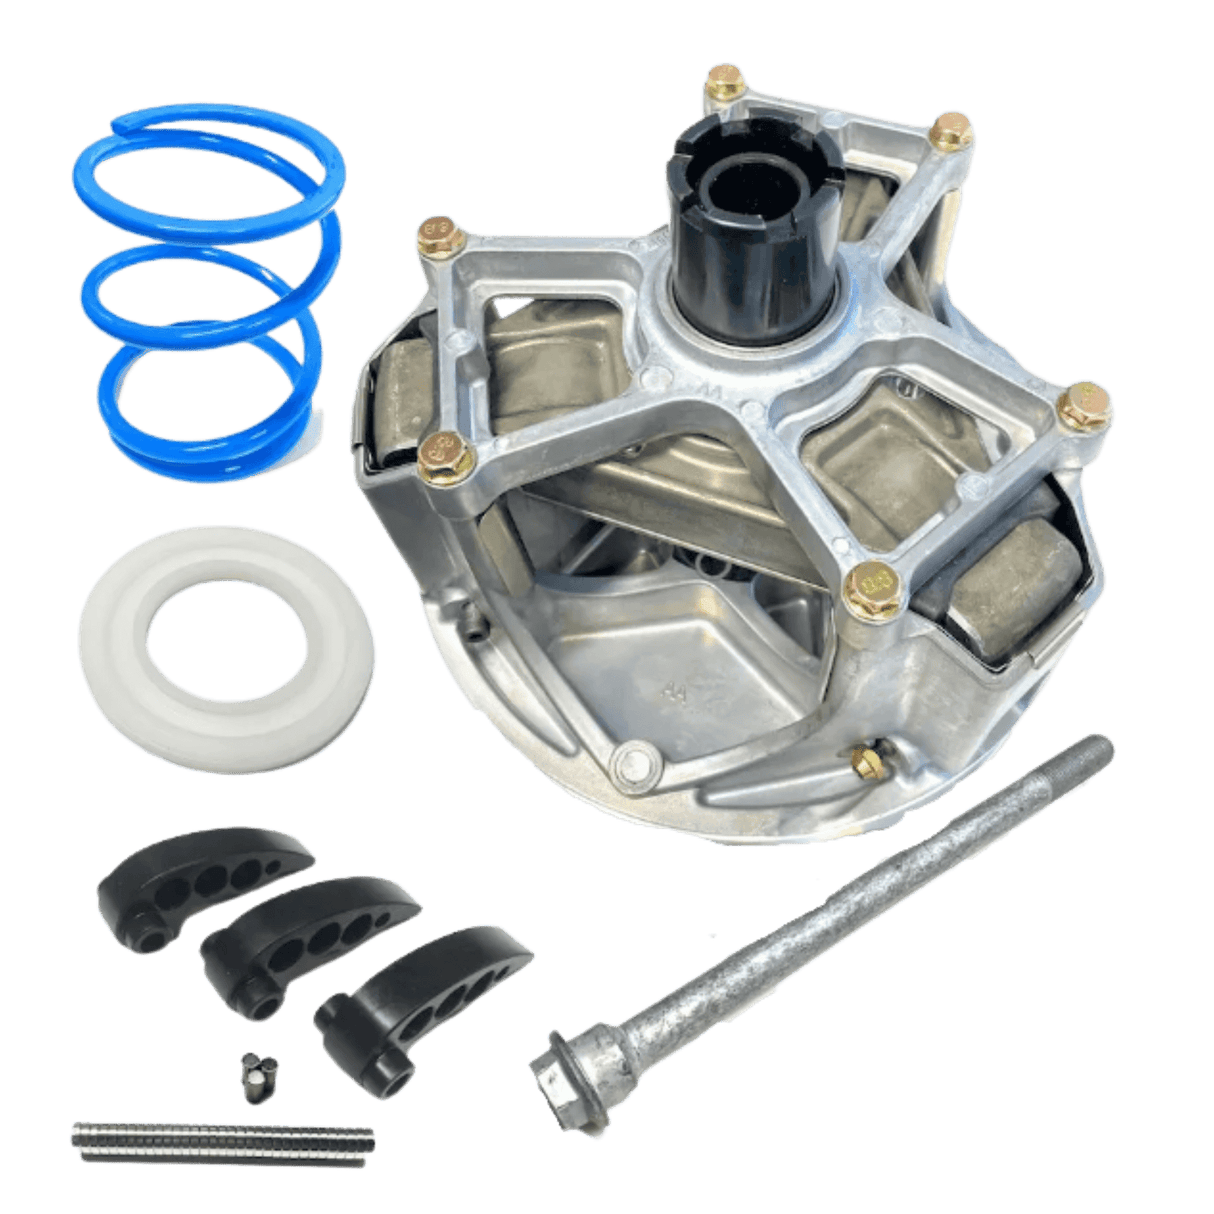 Polaris RZR Turbo & Turbo S Stage 2 Clutch Kit with Heavy Duty Primary (2021) - R1 Industries